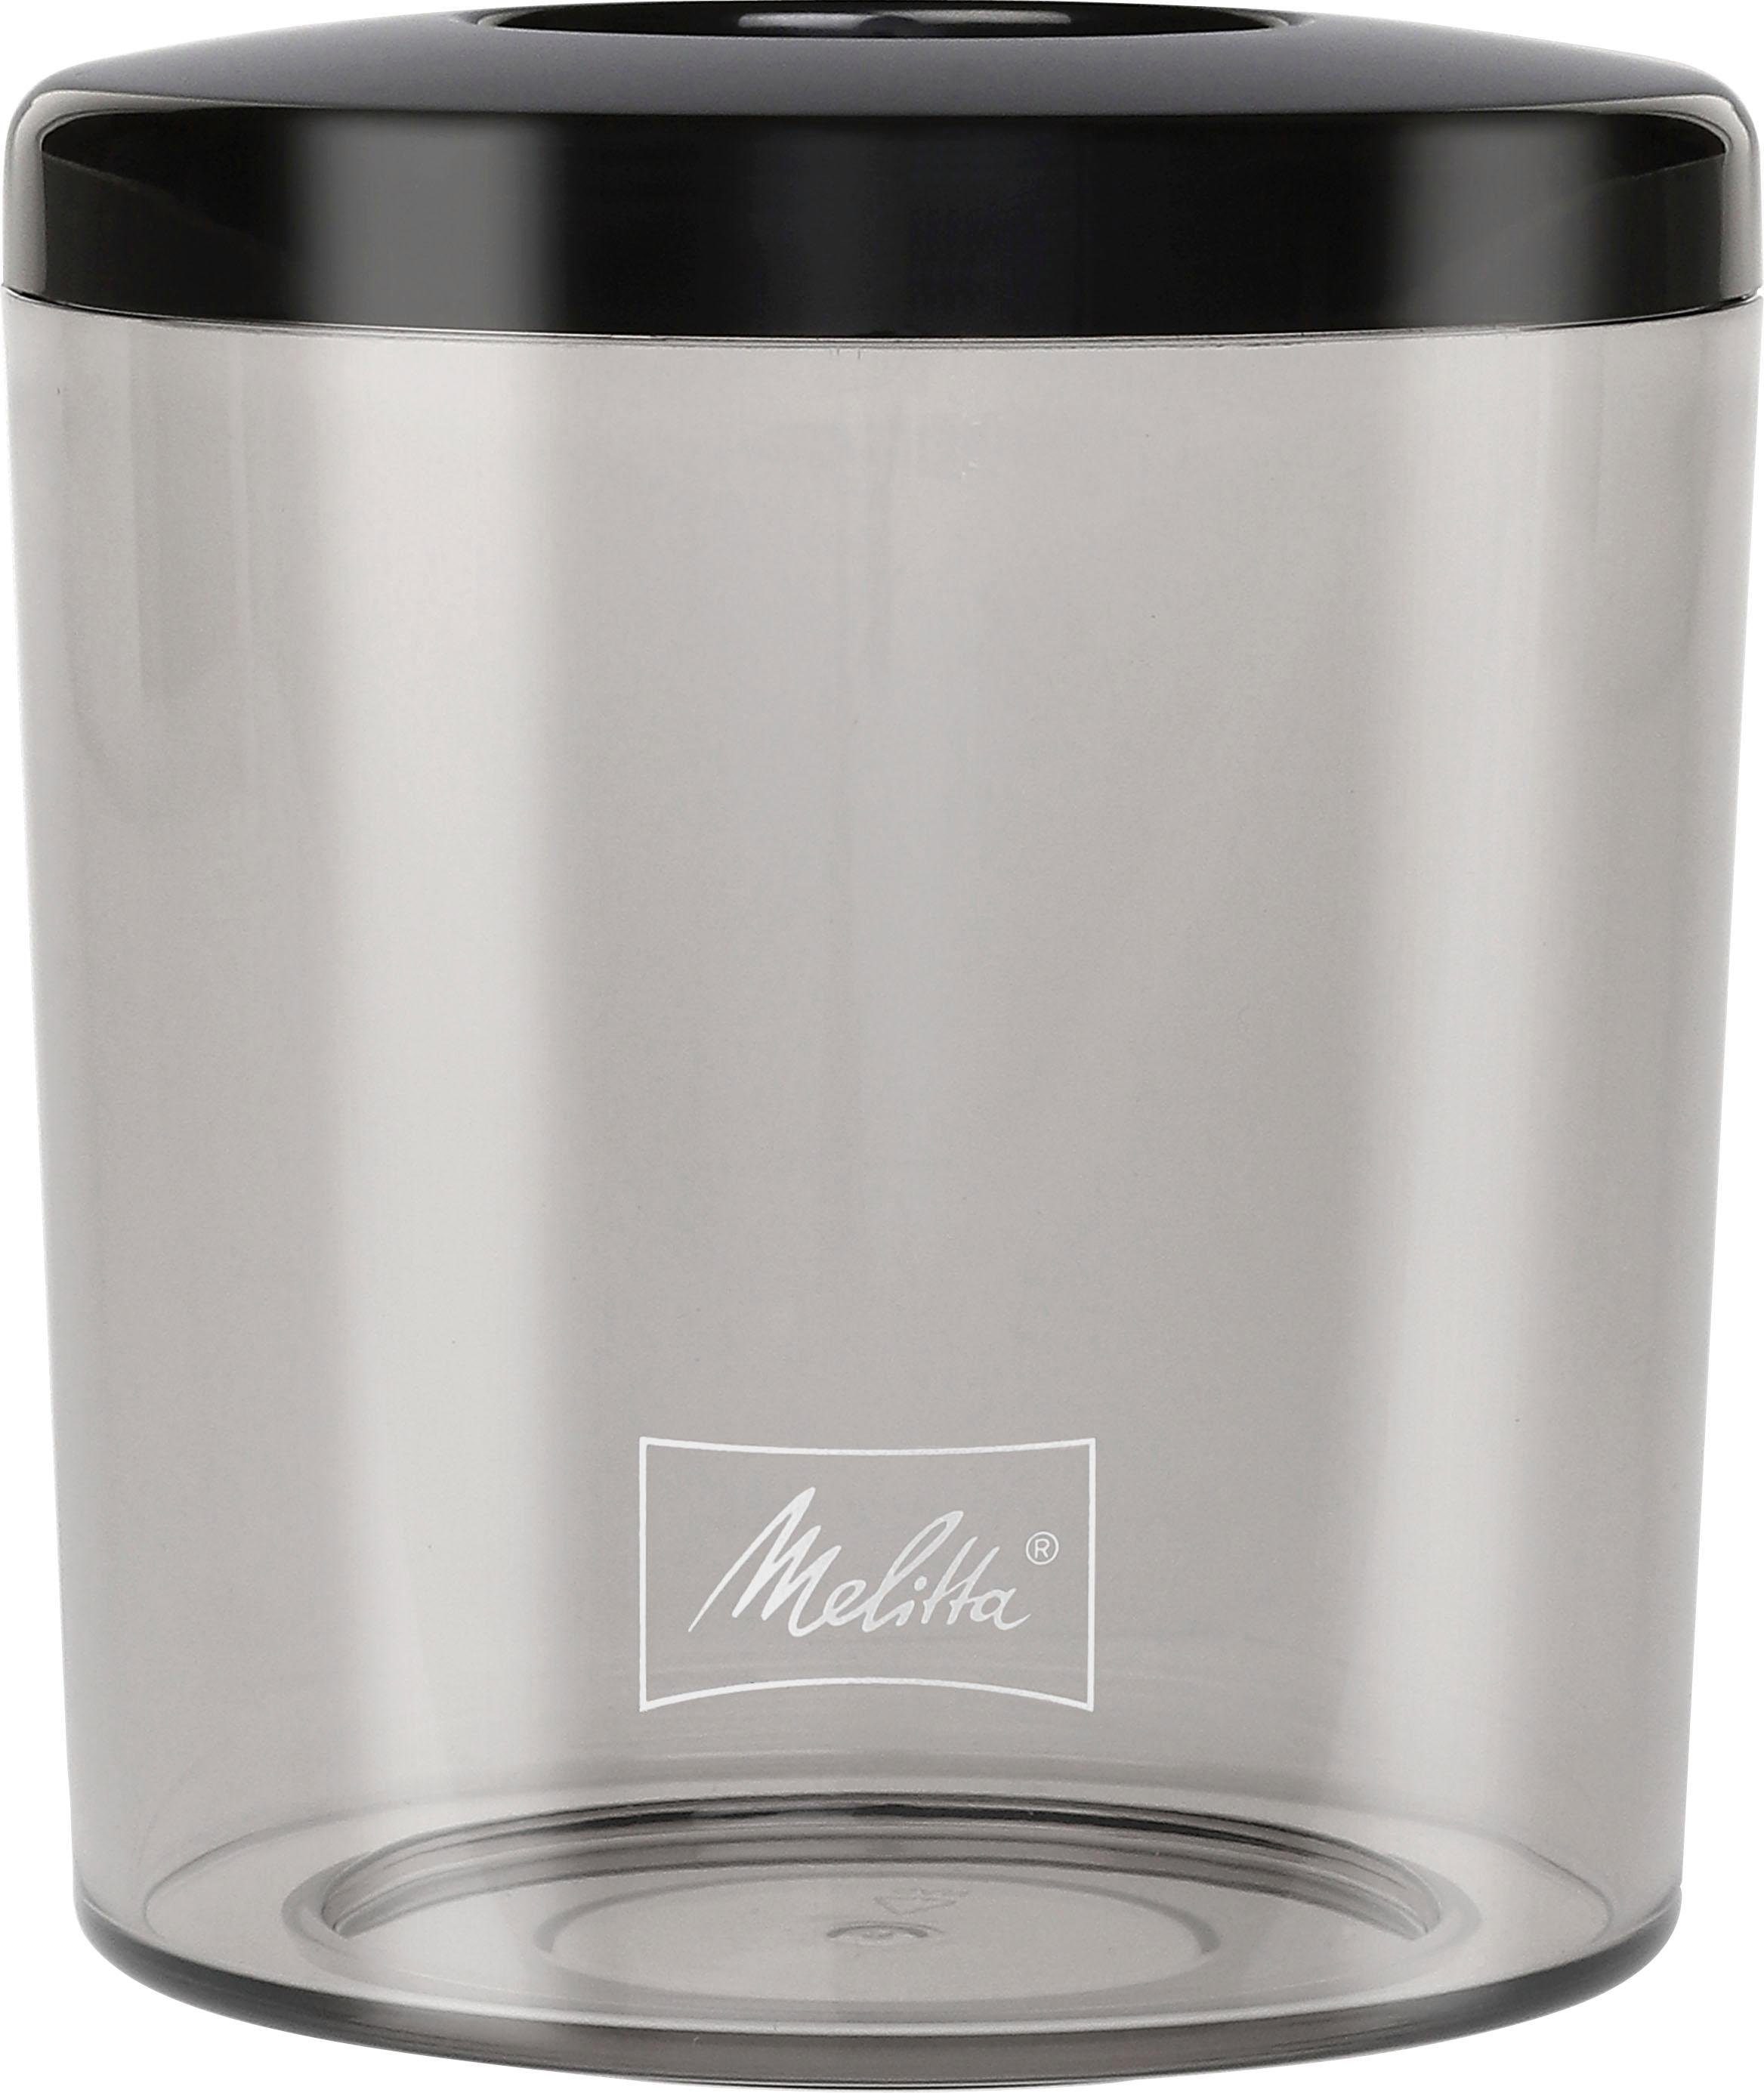 Melitta Kaffeemühle »Calibra 1027-01 schwarz-Edelstahl«, 160 W,  Kegelmahlwerk, 375 g Bohnenbehälter kaufen | BAUR